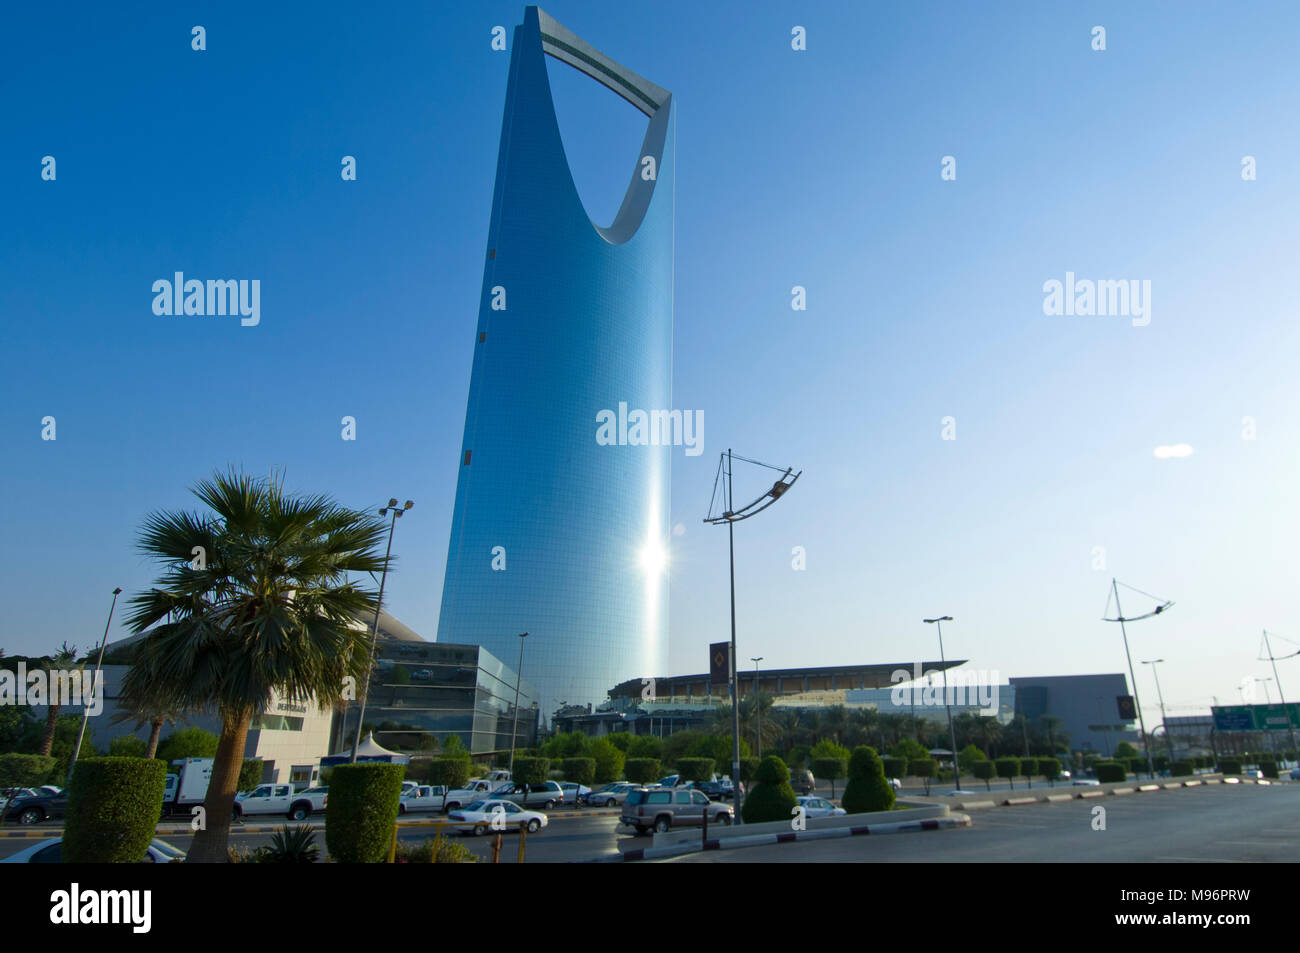 RIYADH - 21 ottobre: Kingdom Tower Skyscaper e dintorni in ottobre 21, 2007 a Riyadh in Arabia Saudita. Foto Stock